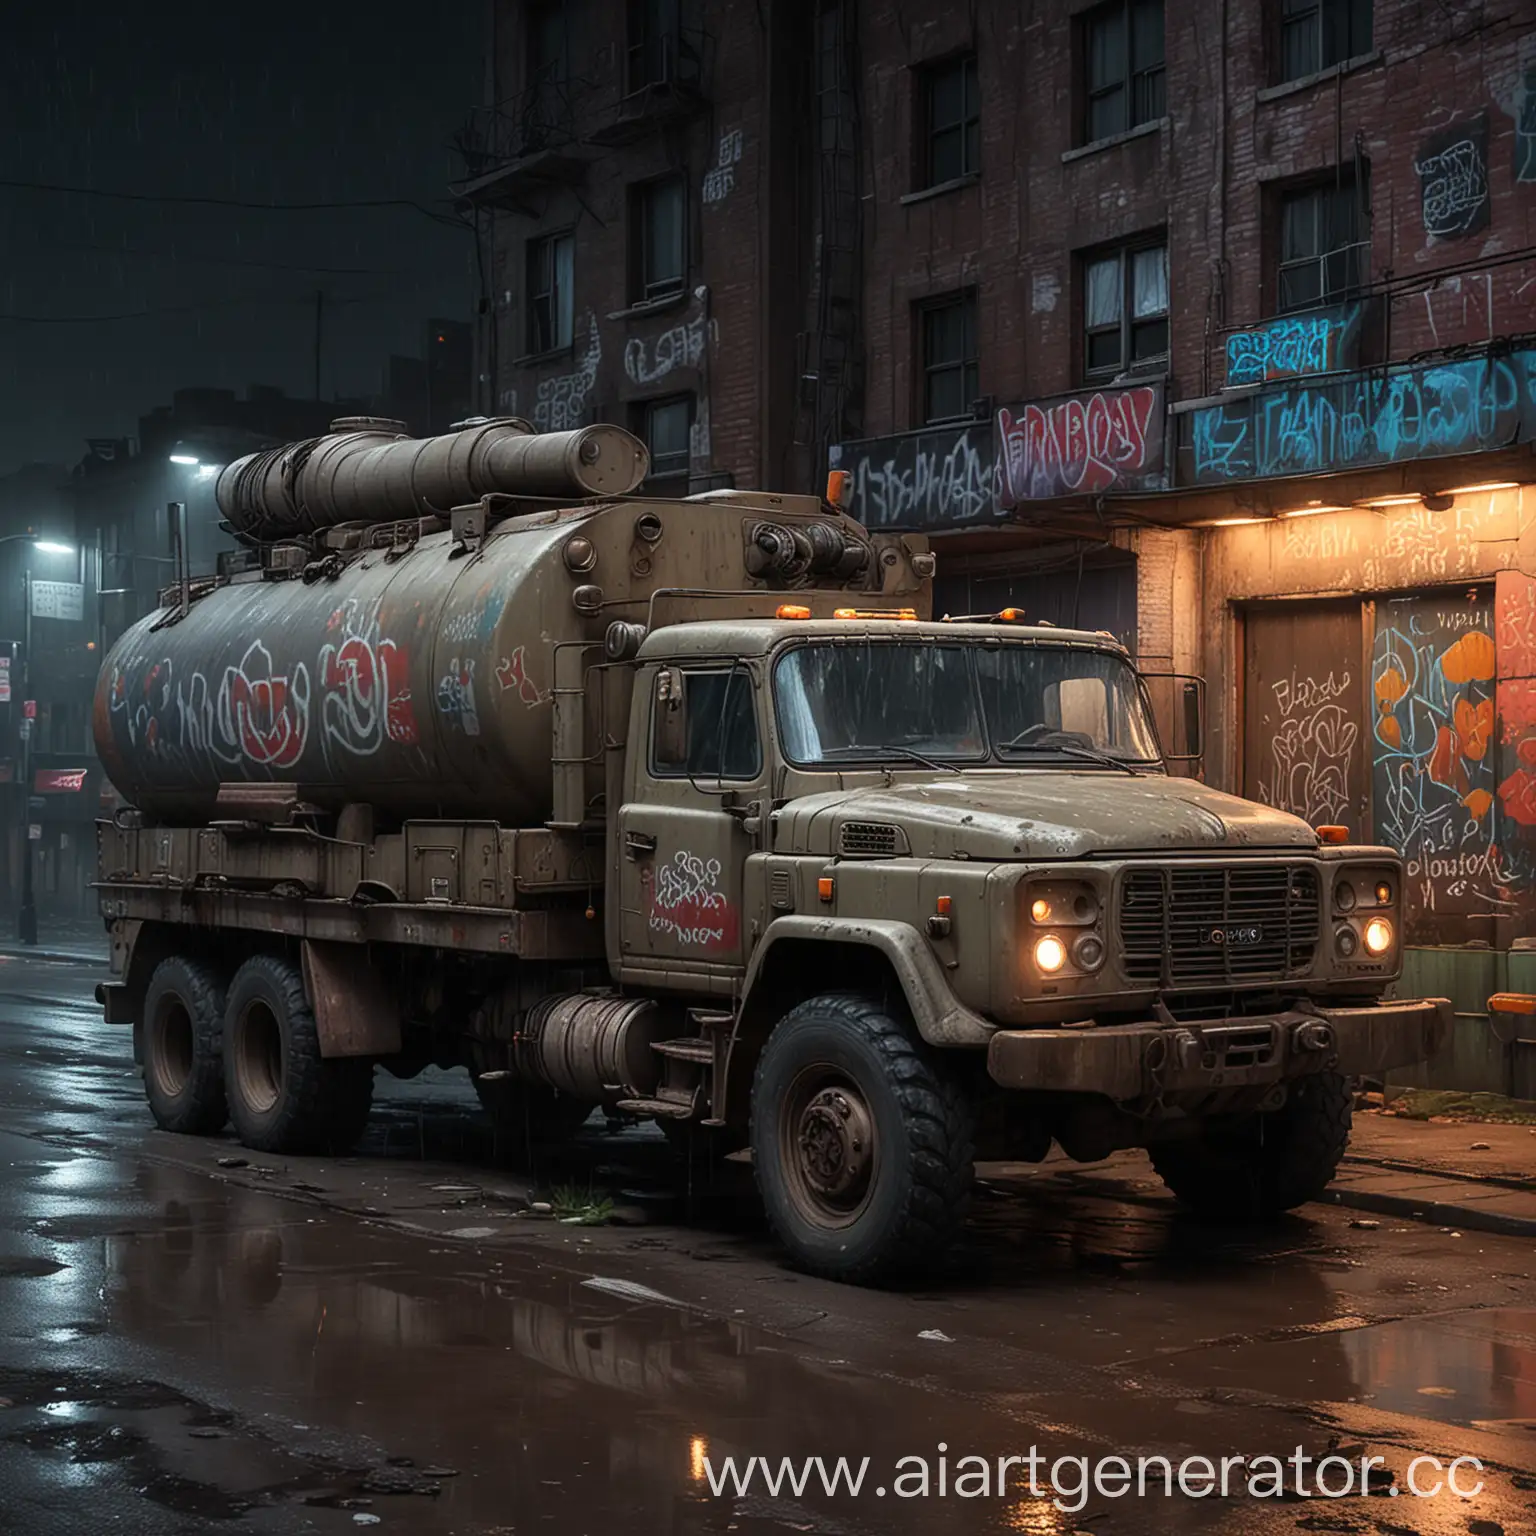 Urban-Night-Scene-Truck-with-Tank-in-GraffitiAdorned-Ghetto